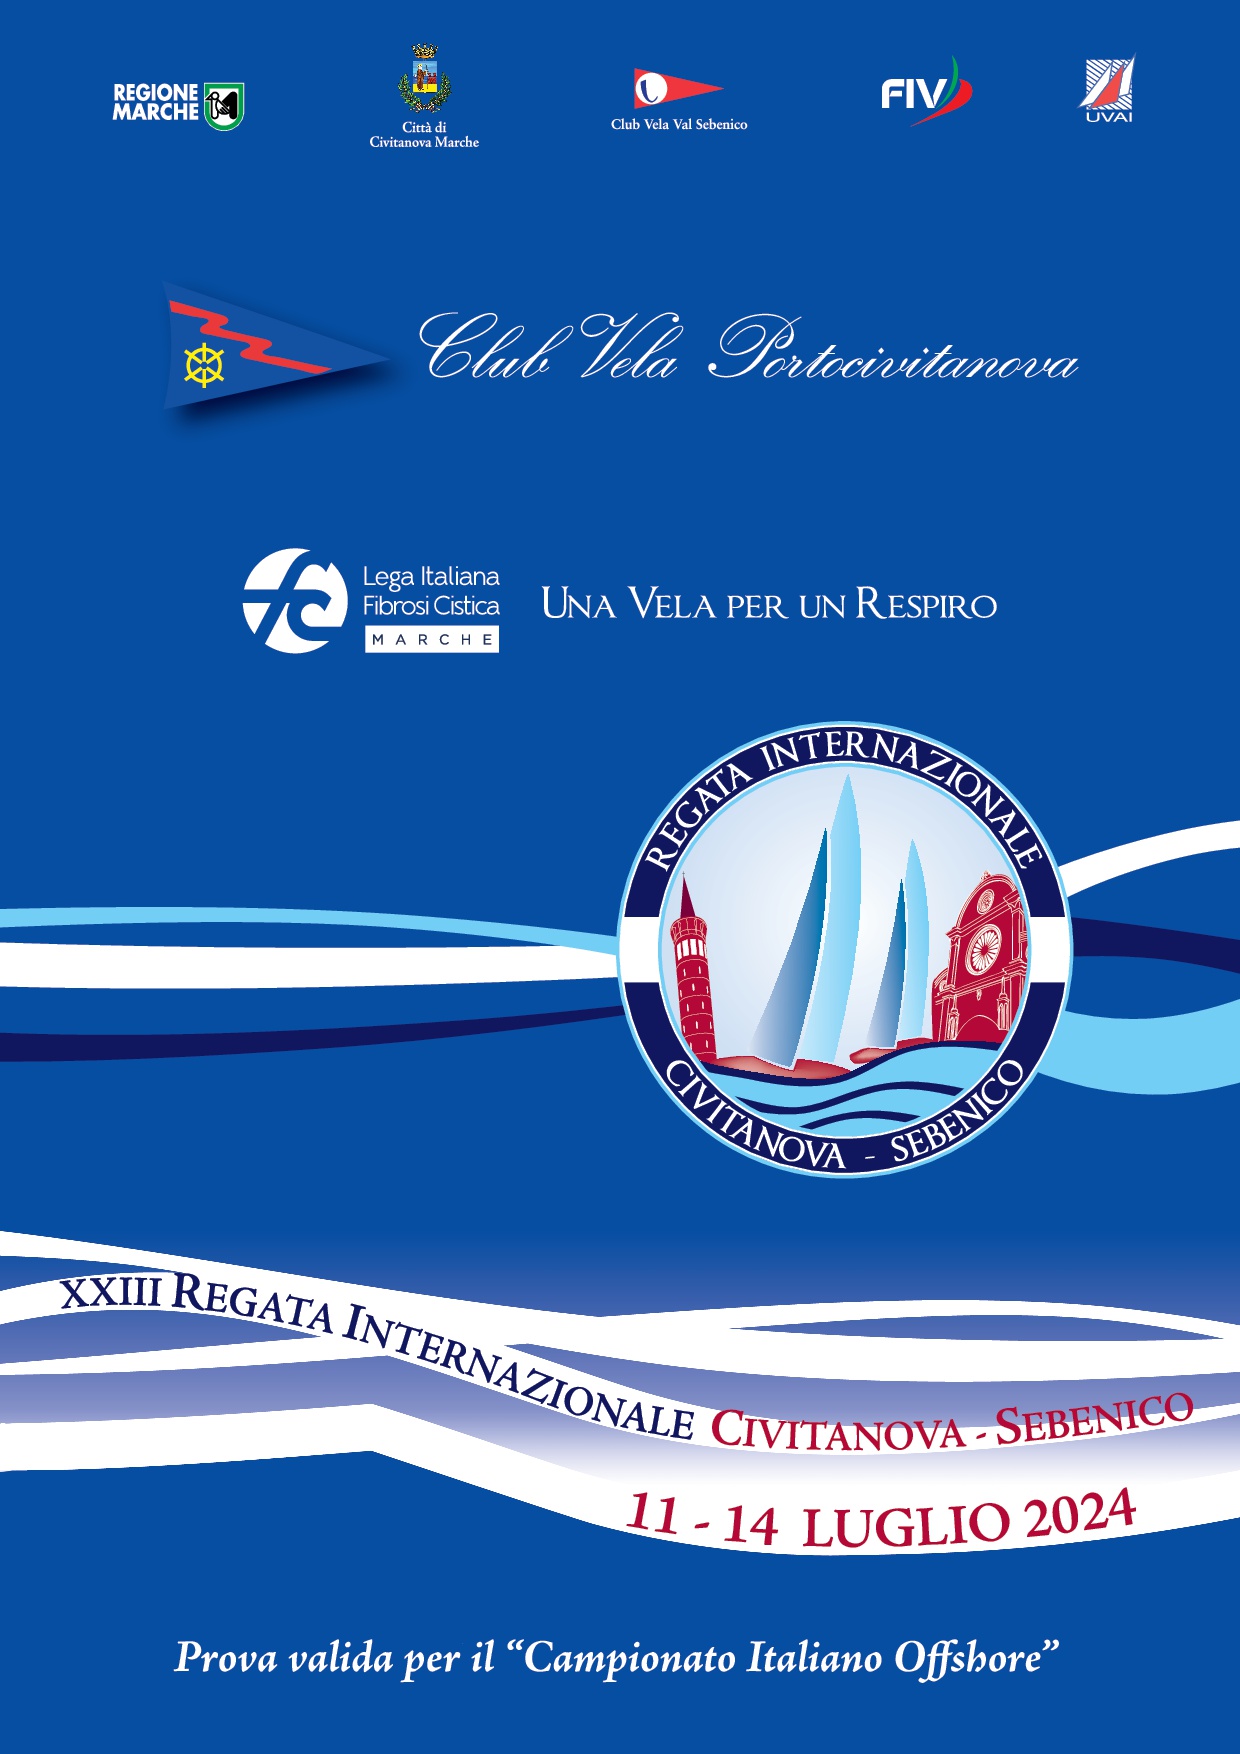 11 / 14 luglio 2024 – CIVITANOVA – SEBENICO valida per il Campionato Italiano Offshore (valida Palo d’Oro)